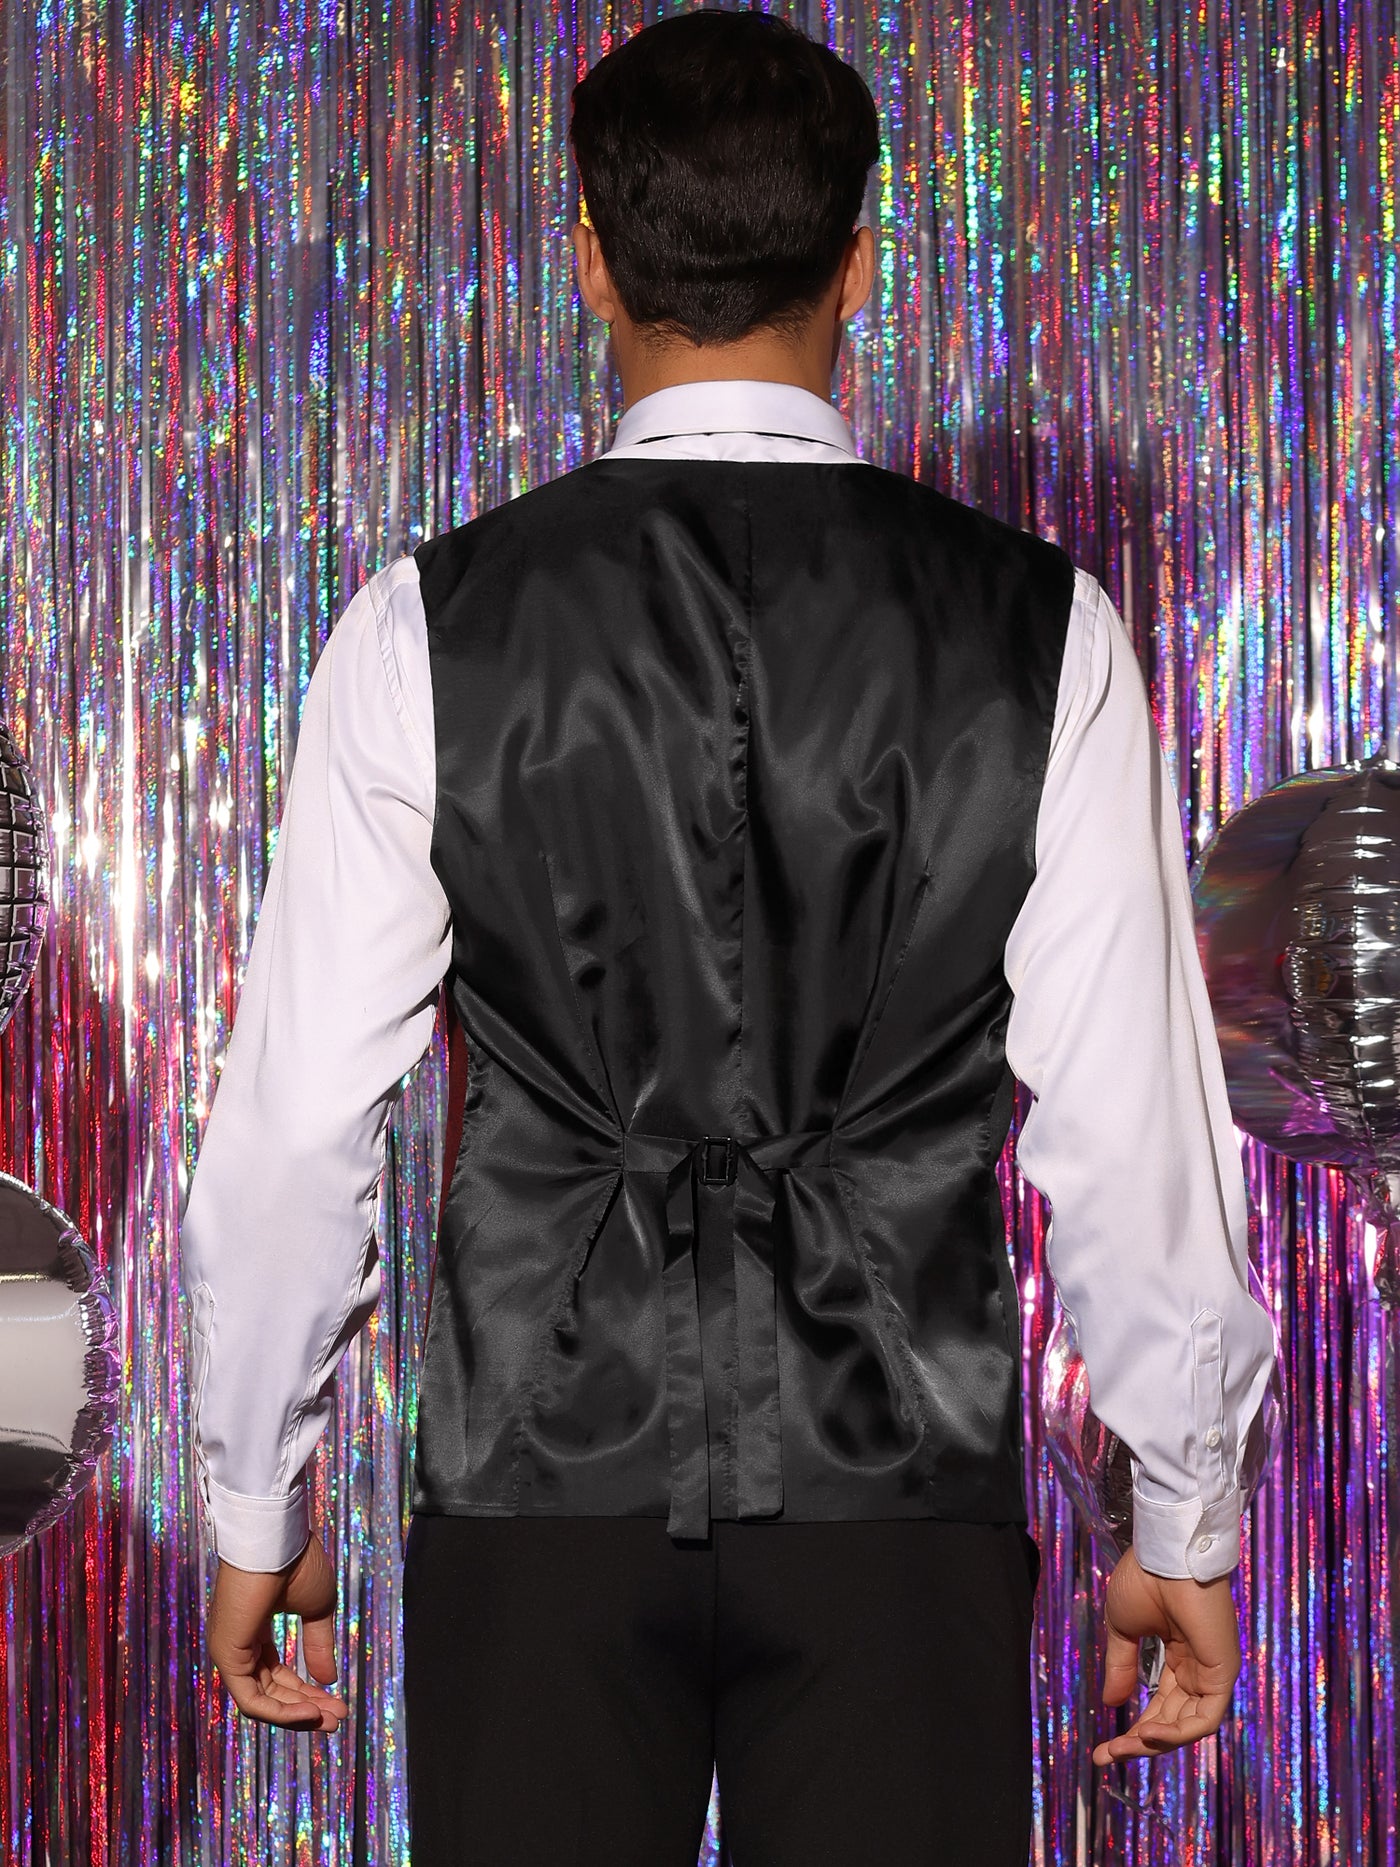 Bublédon Dress Waistcoats for Men's Slim Fit Tuxedo Classic Business Suit Vest